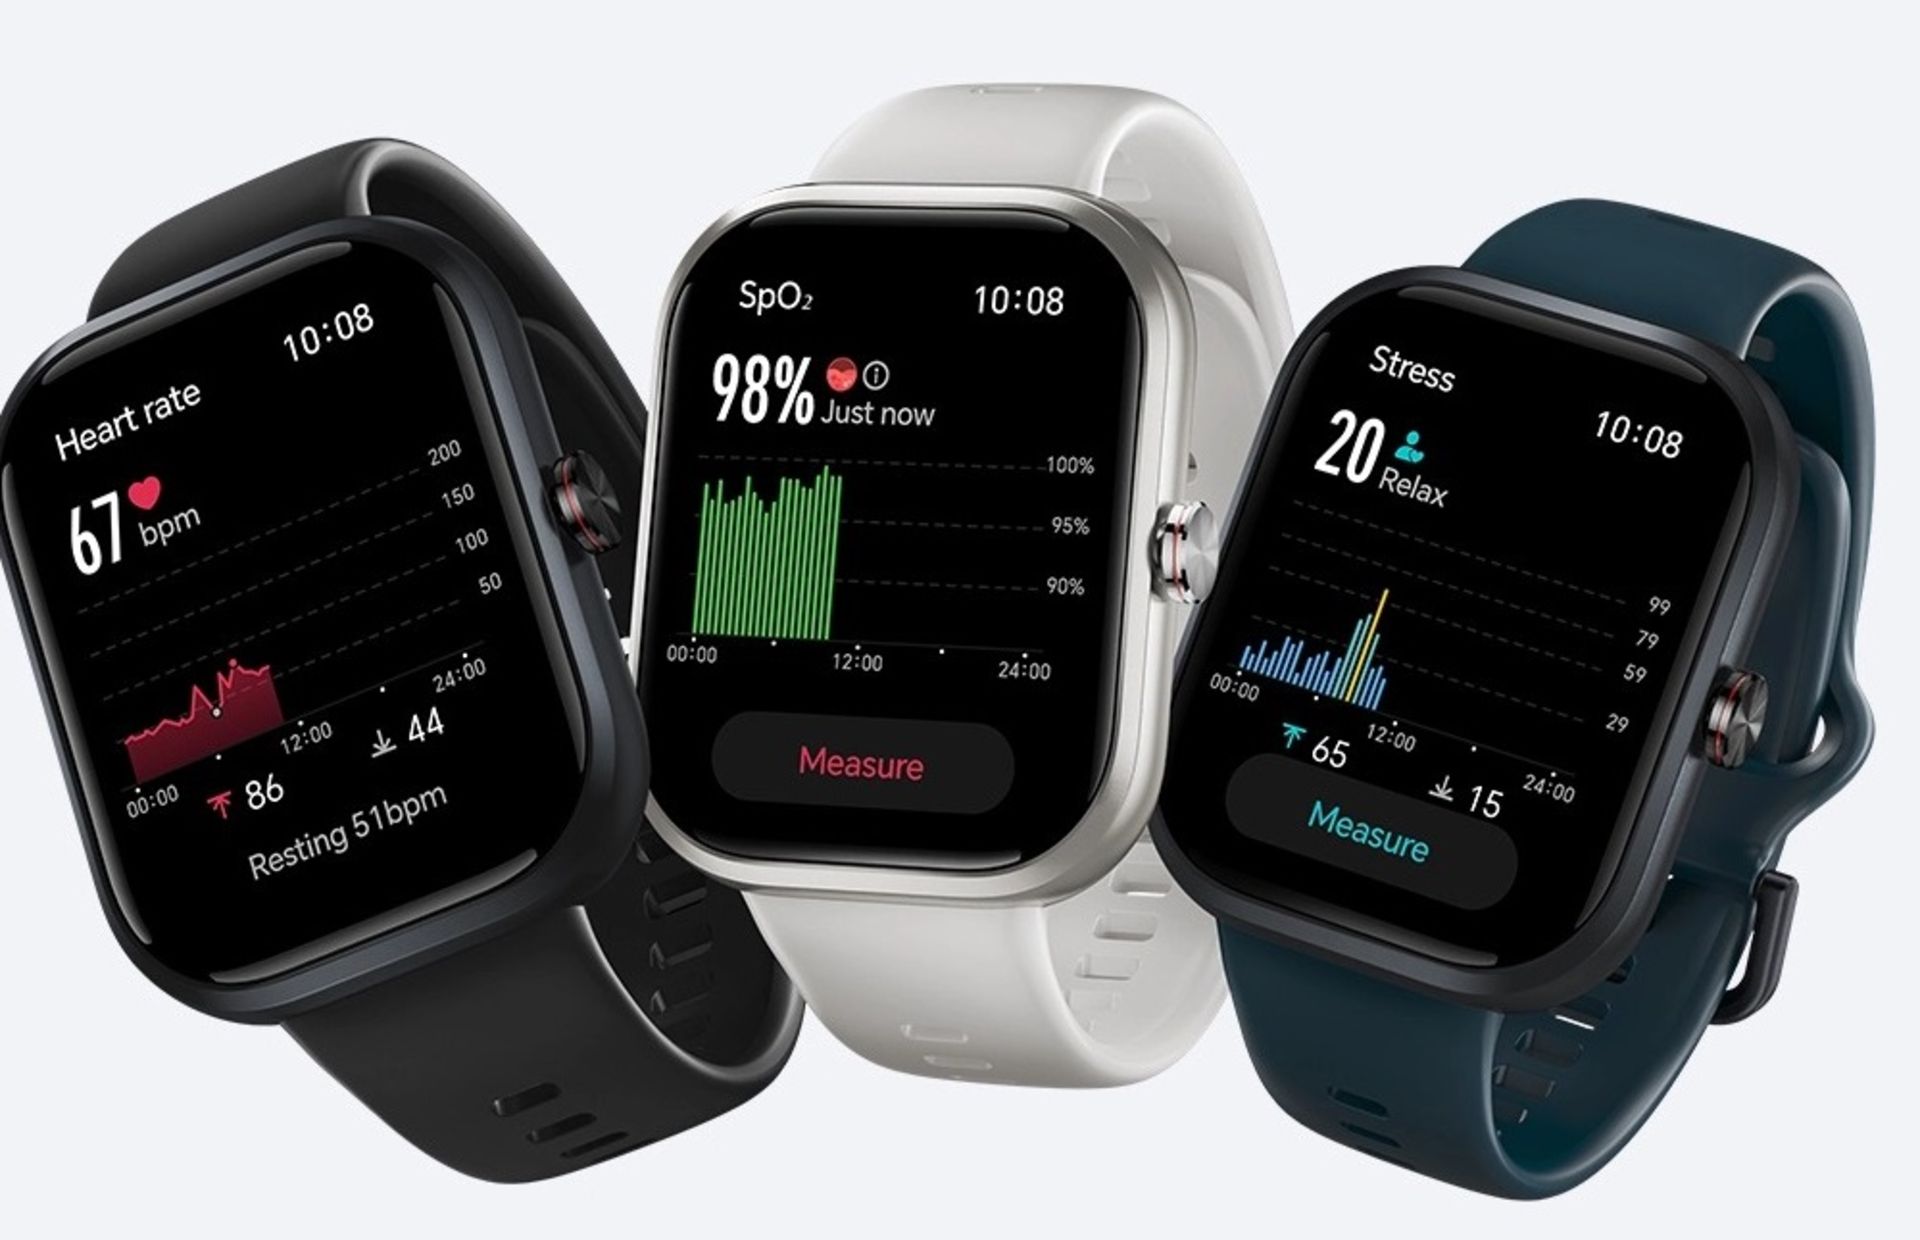 ساعت های هوشمند آنر honor choice در سه رنگ مختلف در حال نمایش ویژگی سلامتی